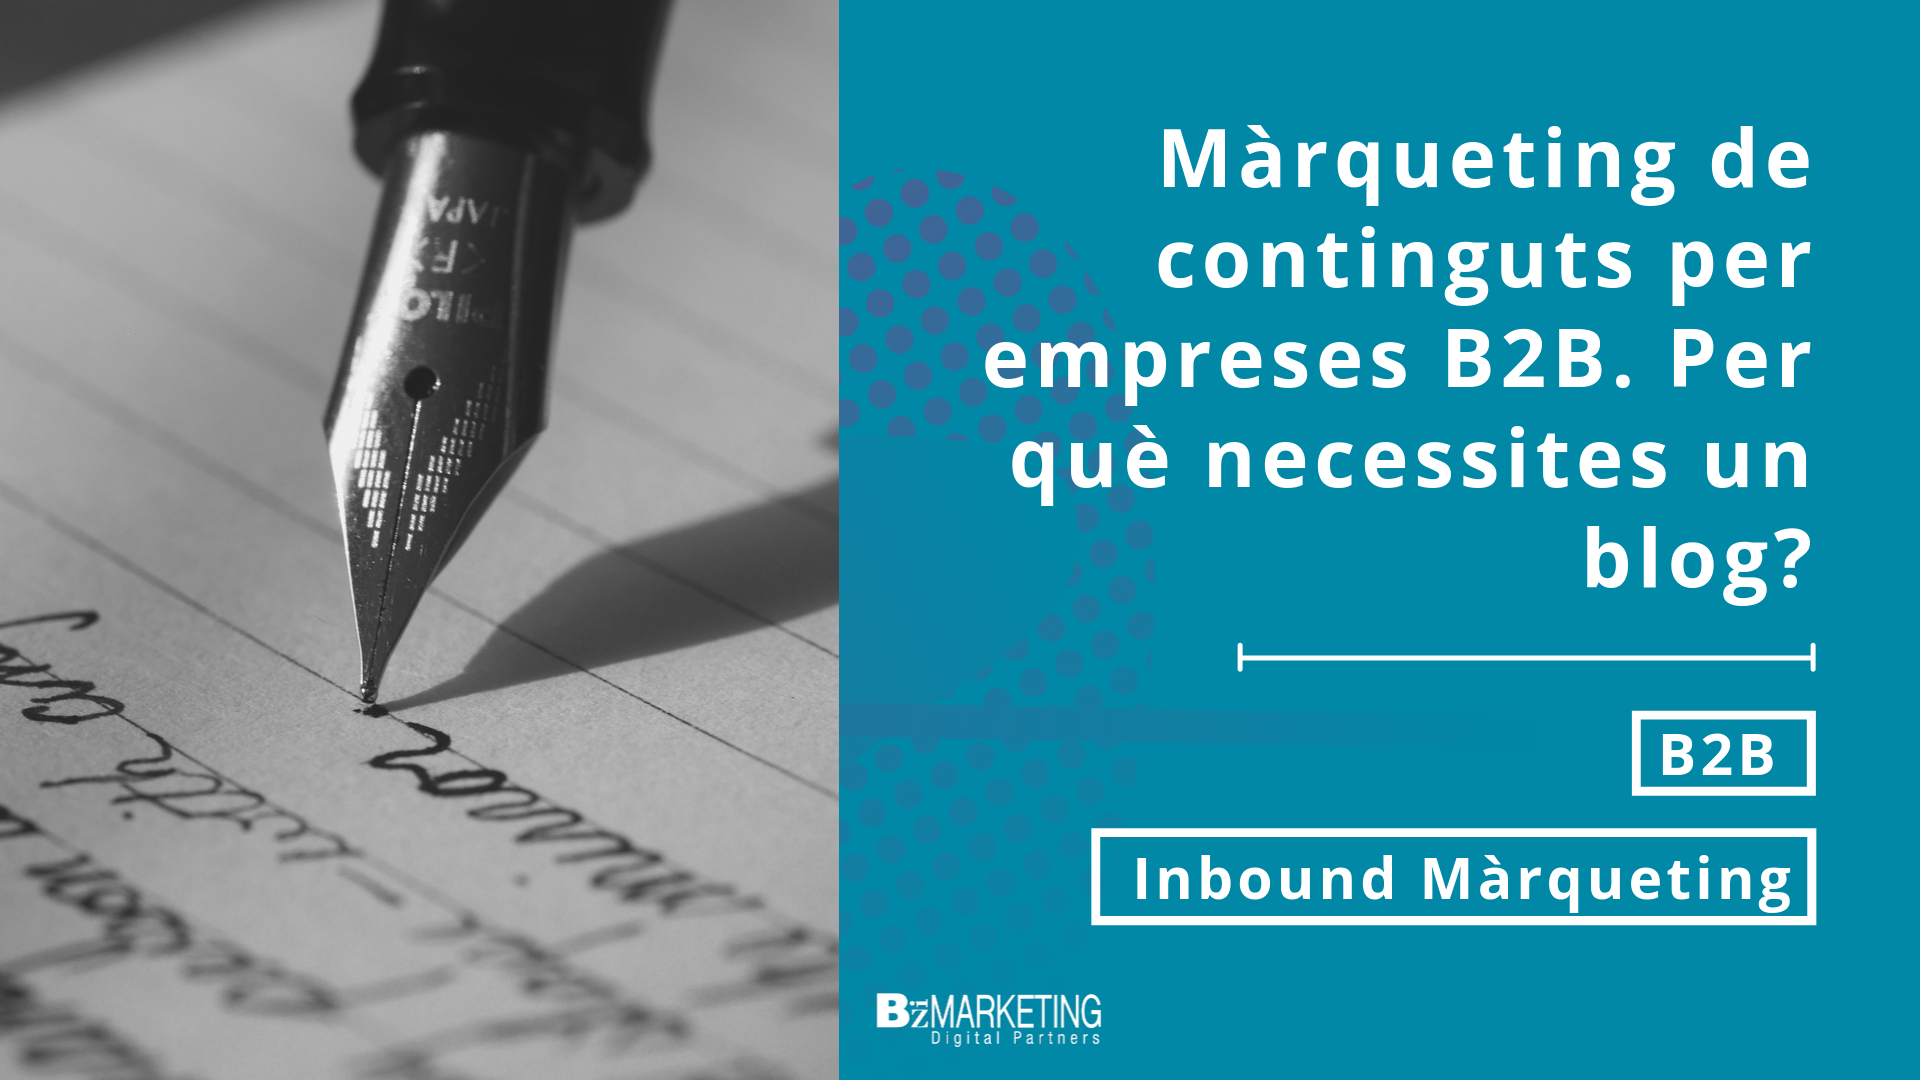 Marqueting-de-continguts-per-empreses-b2b-necessites-un-blog-empreserial-inbound-marketing-bizmarketing